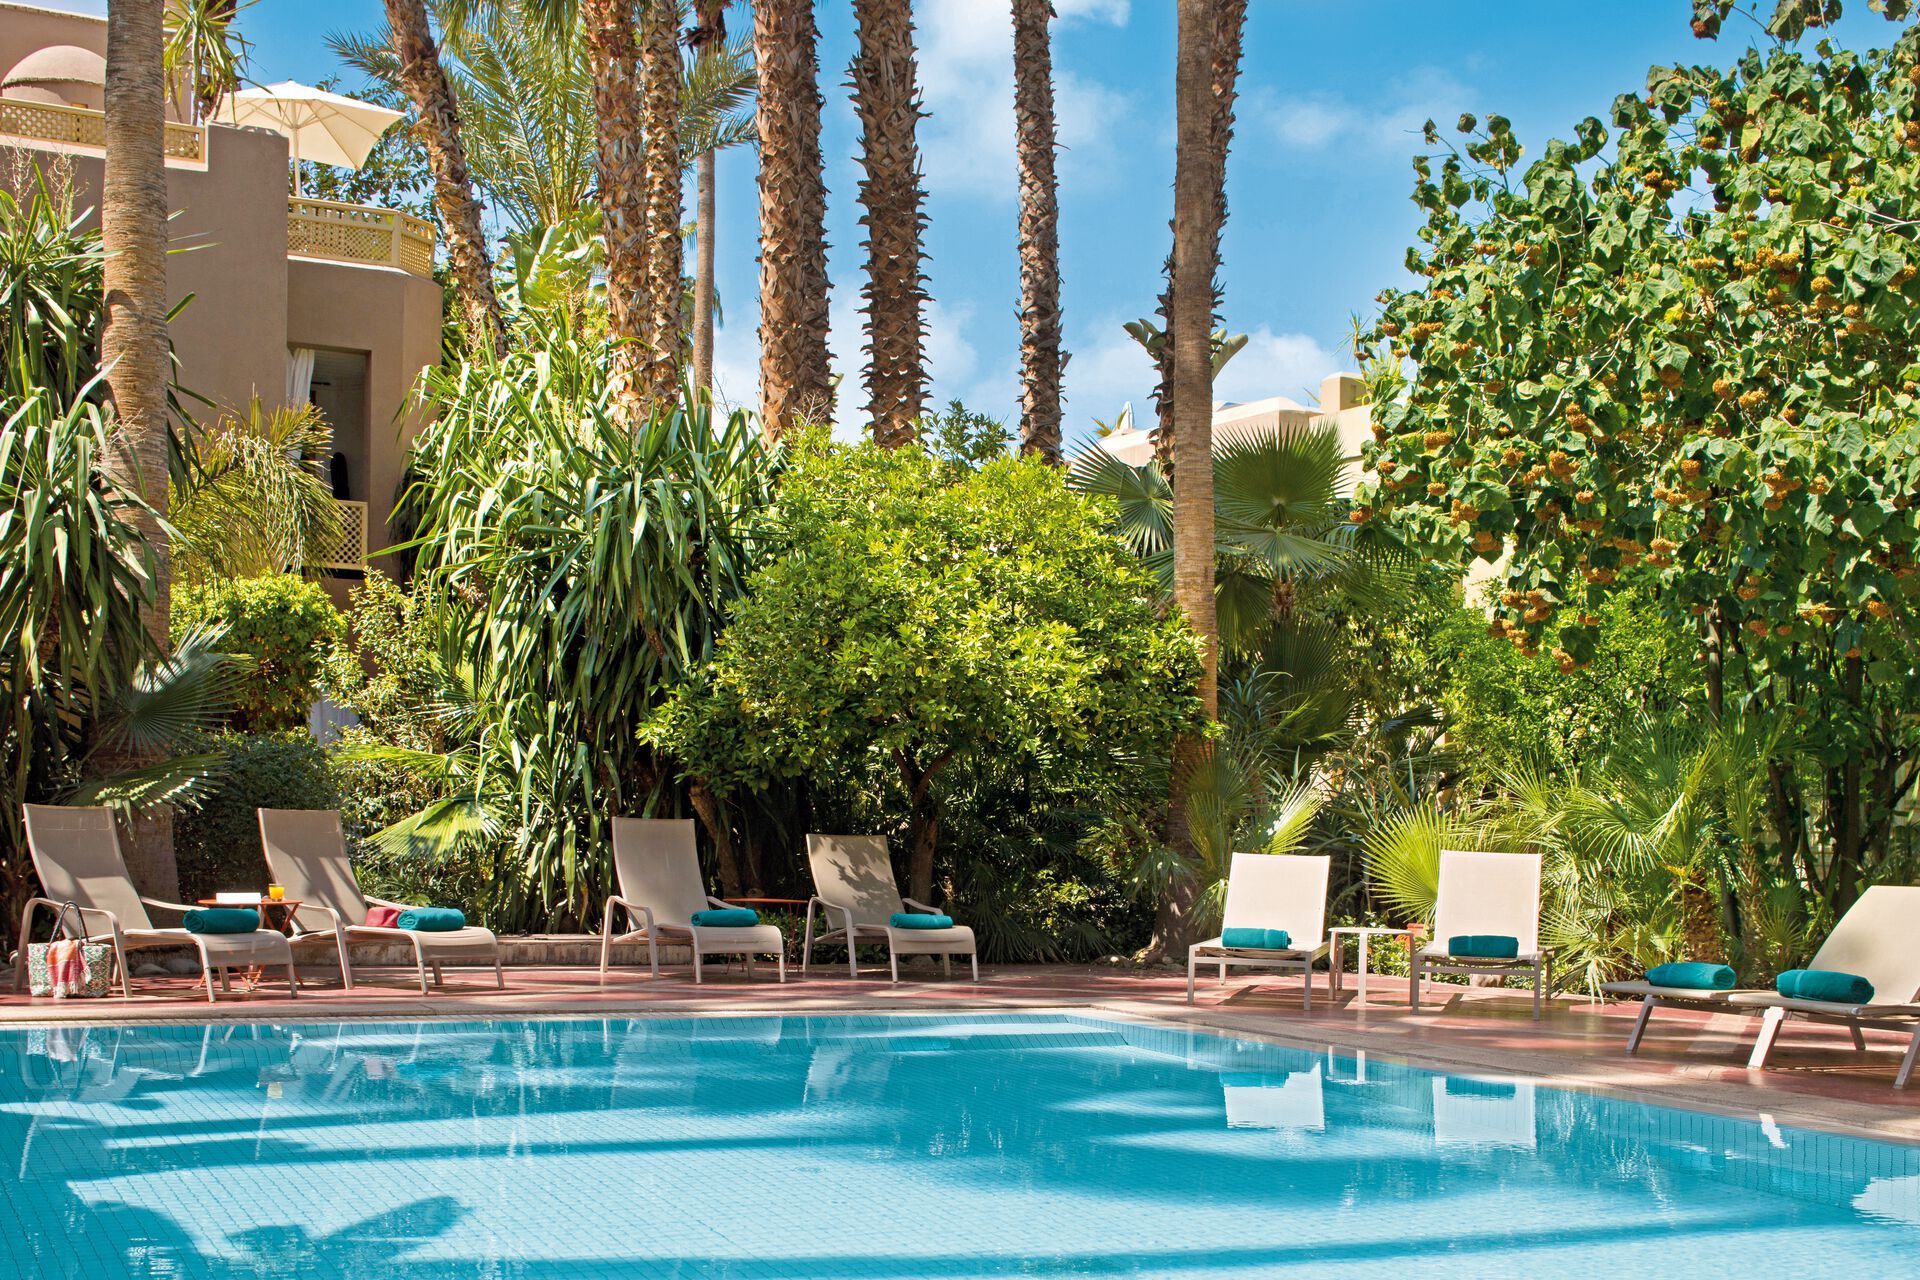 Maroc - Marrakech - Hotel Les Jardins de la Medina 5*